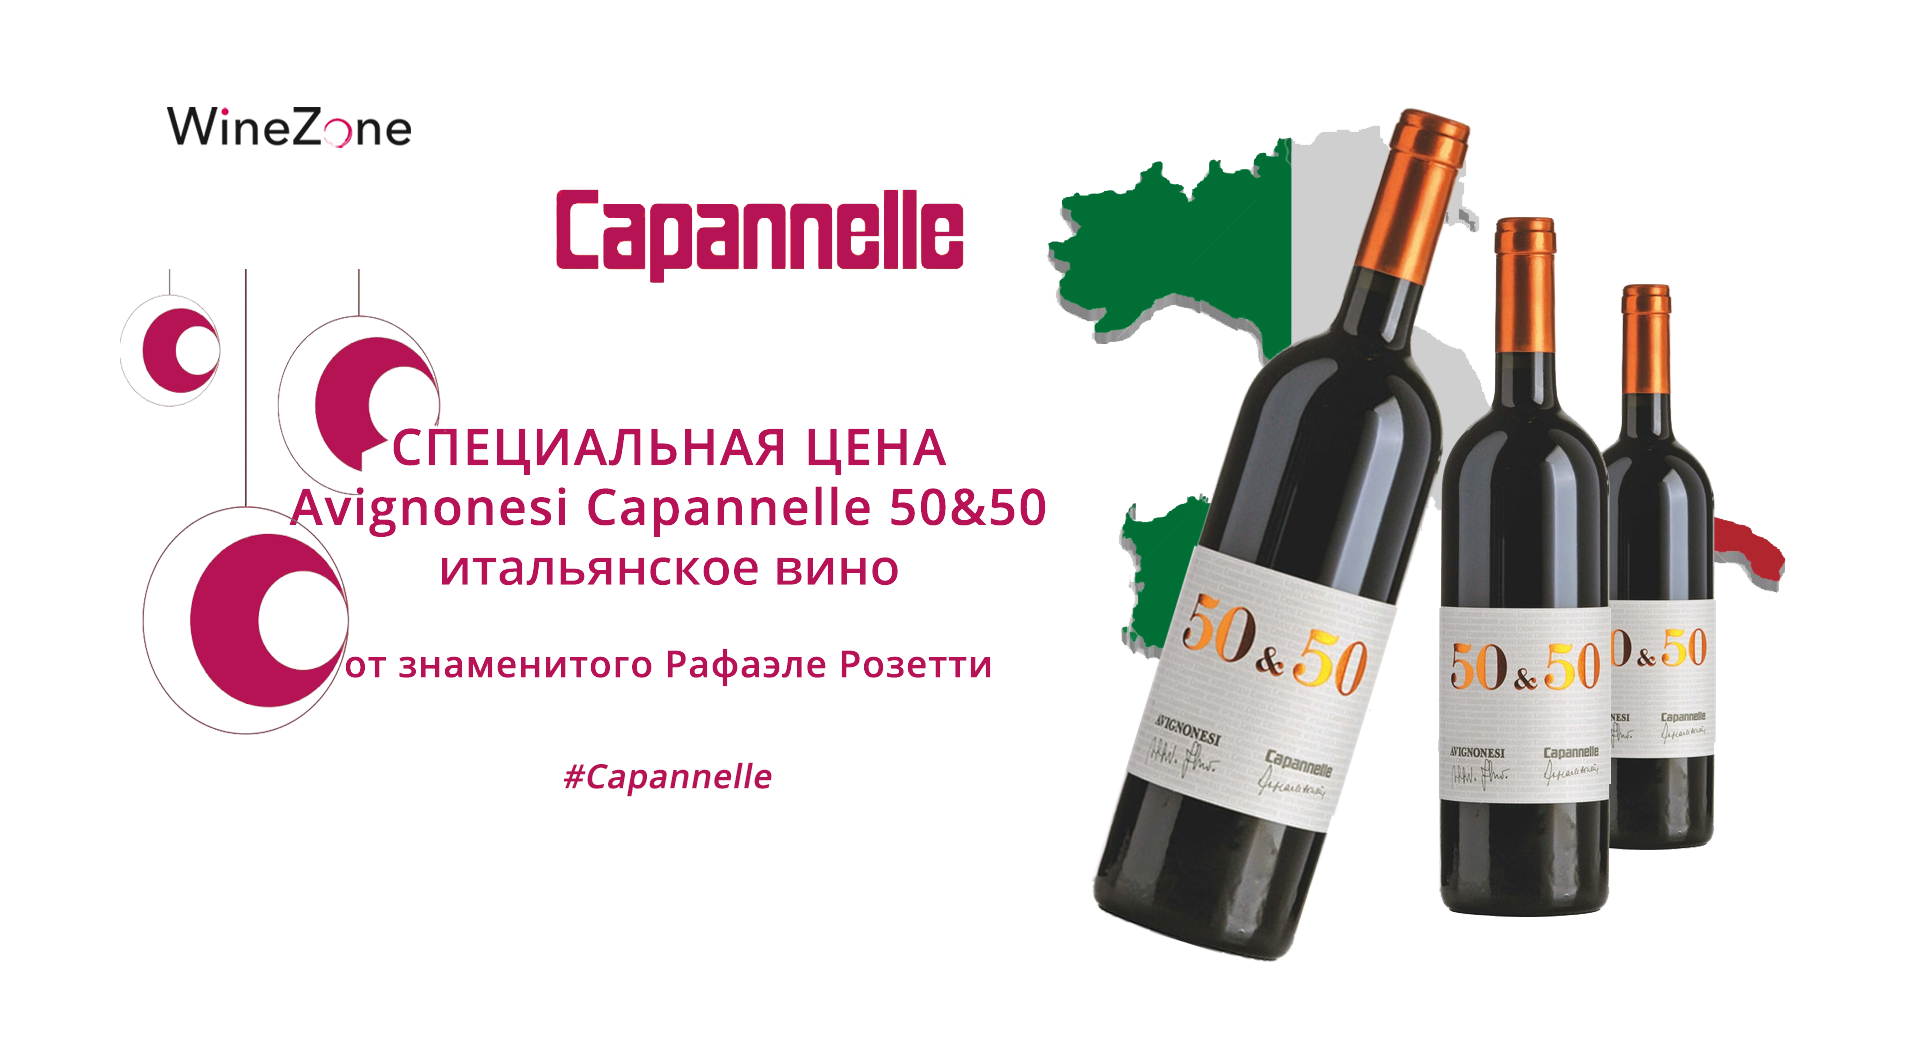 Специальная цена на вино Авиньонези Капанелли 50&50!